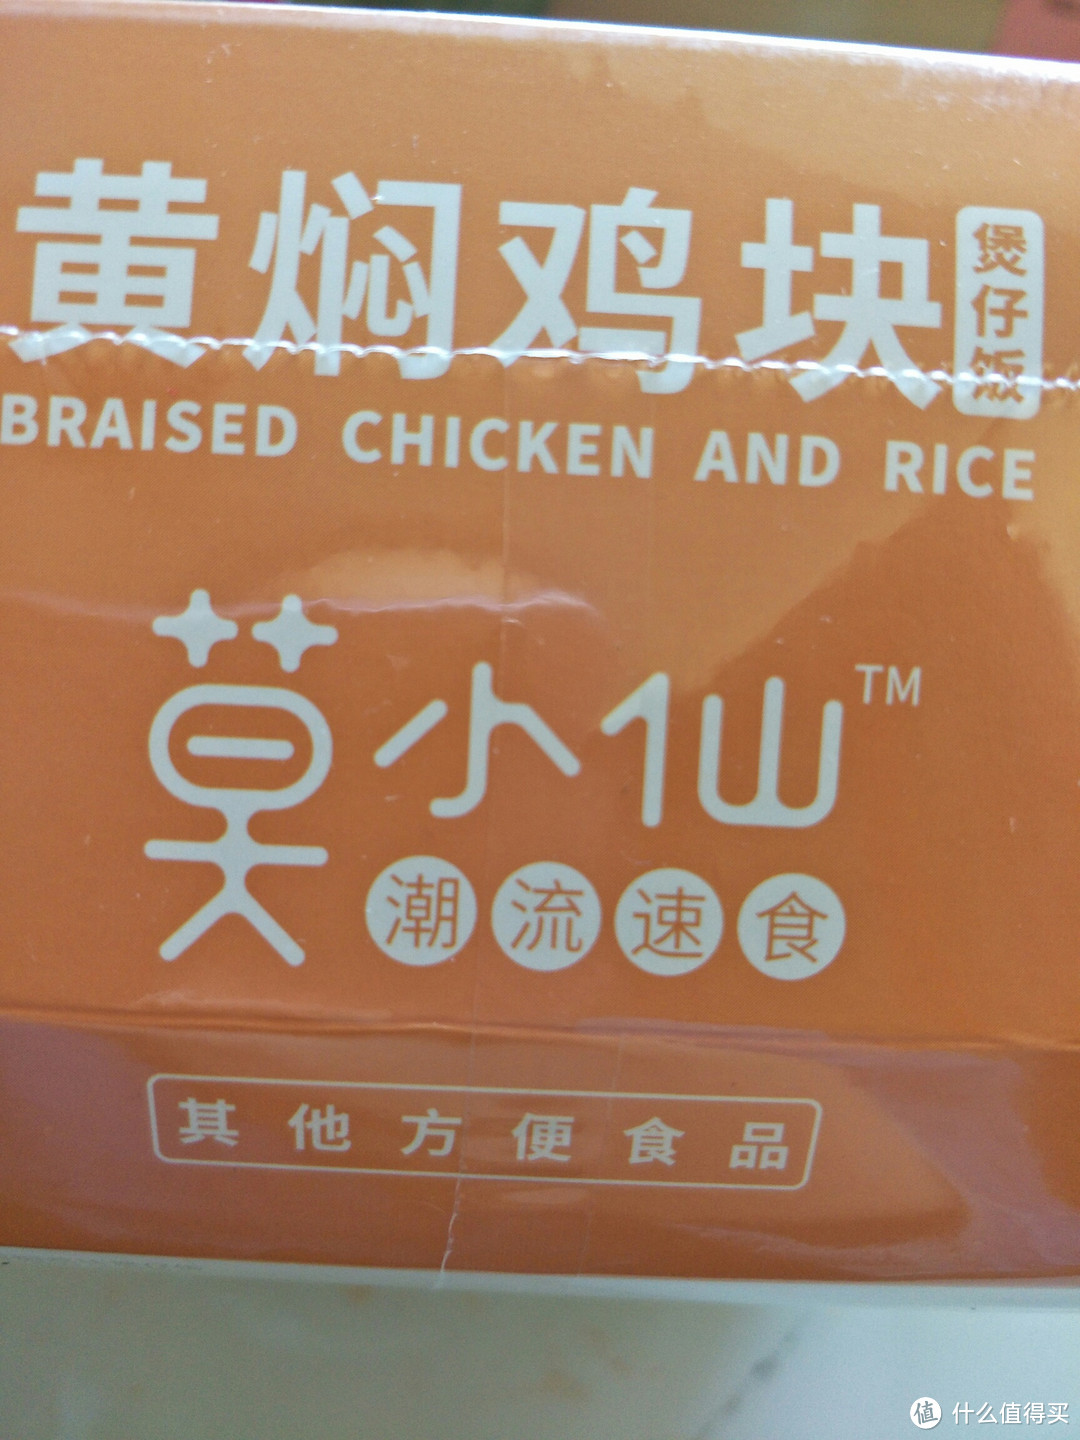 双十一买了这个莫小仙的潮流速食自热米饭。